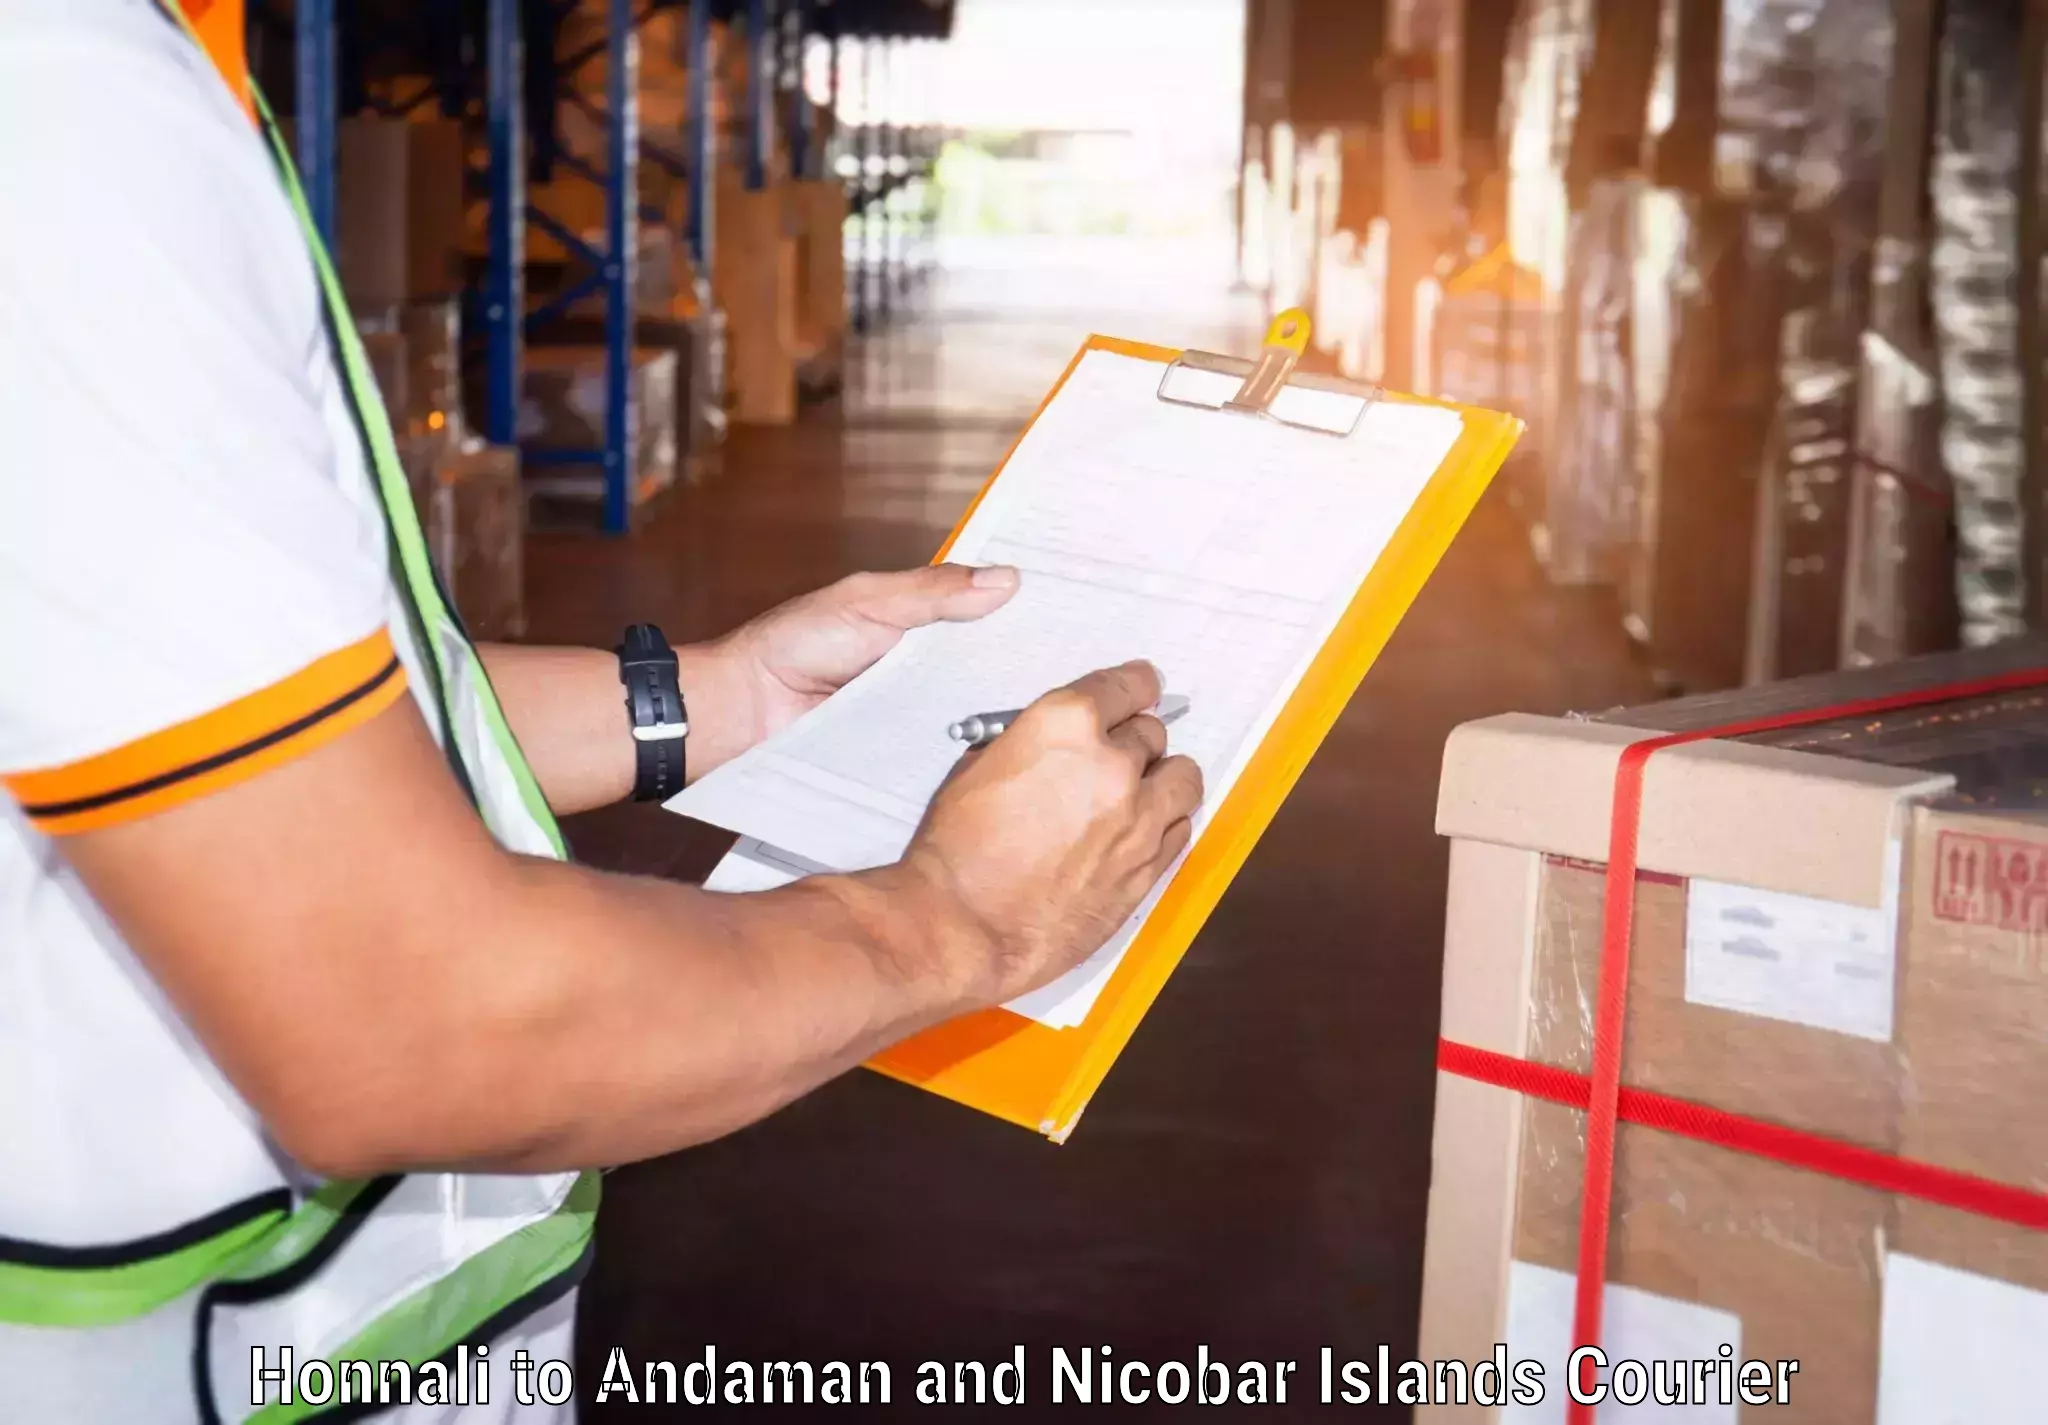 Global shipping networks Honnali to Andaman and Nicobar Islands